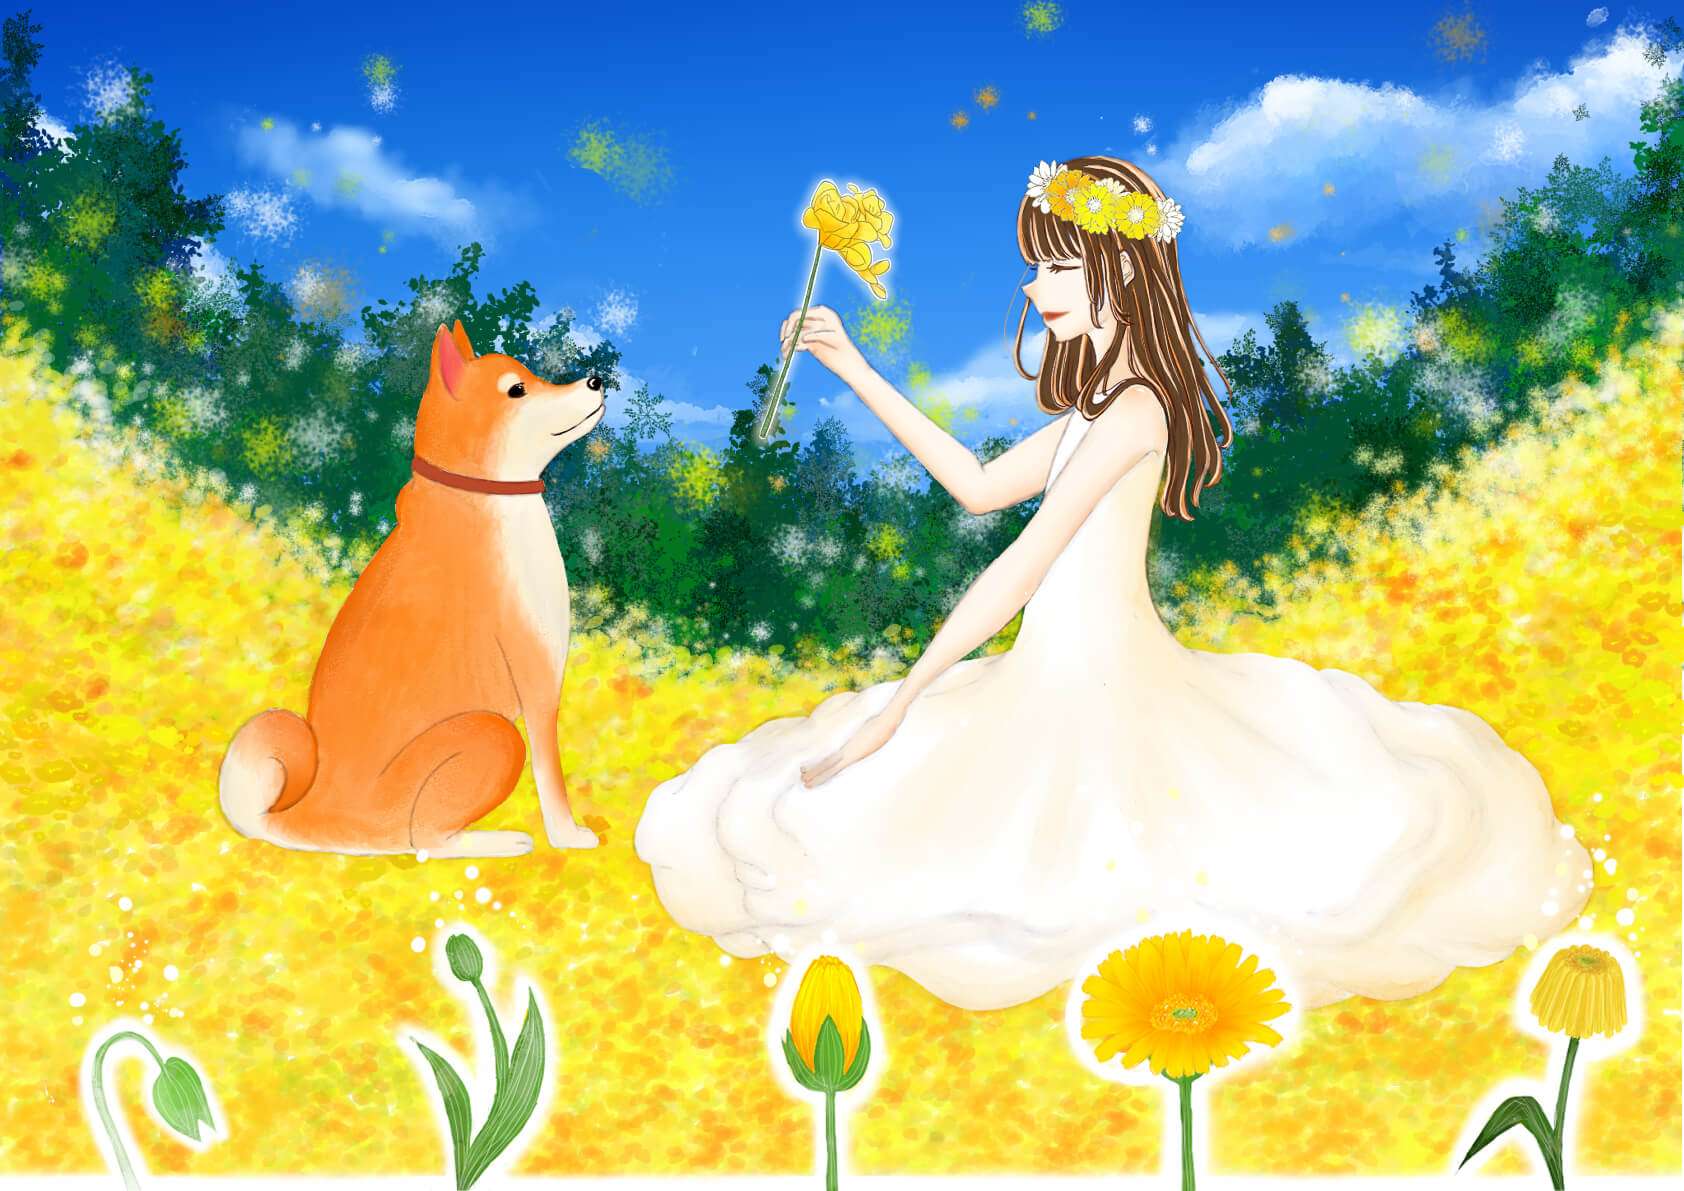 青空の下、一面黄色のお花畑で、白いドレスに花冠をかぶった女性がワンちゃんへ一凛の黄色い花を渡しているイラストです